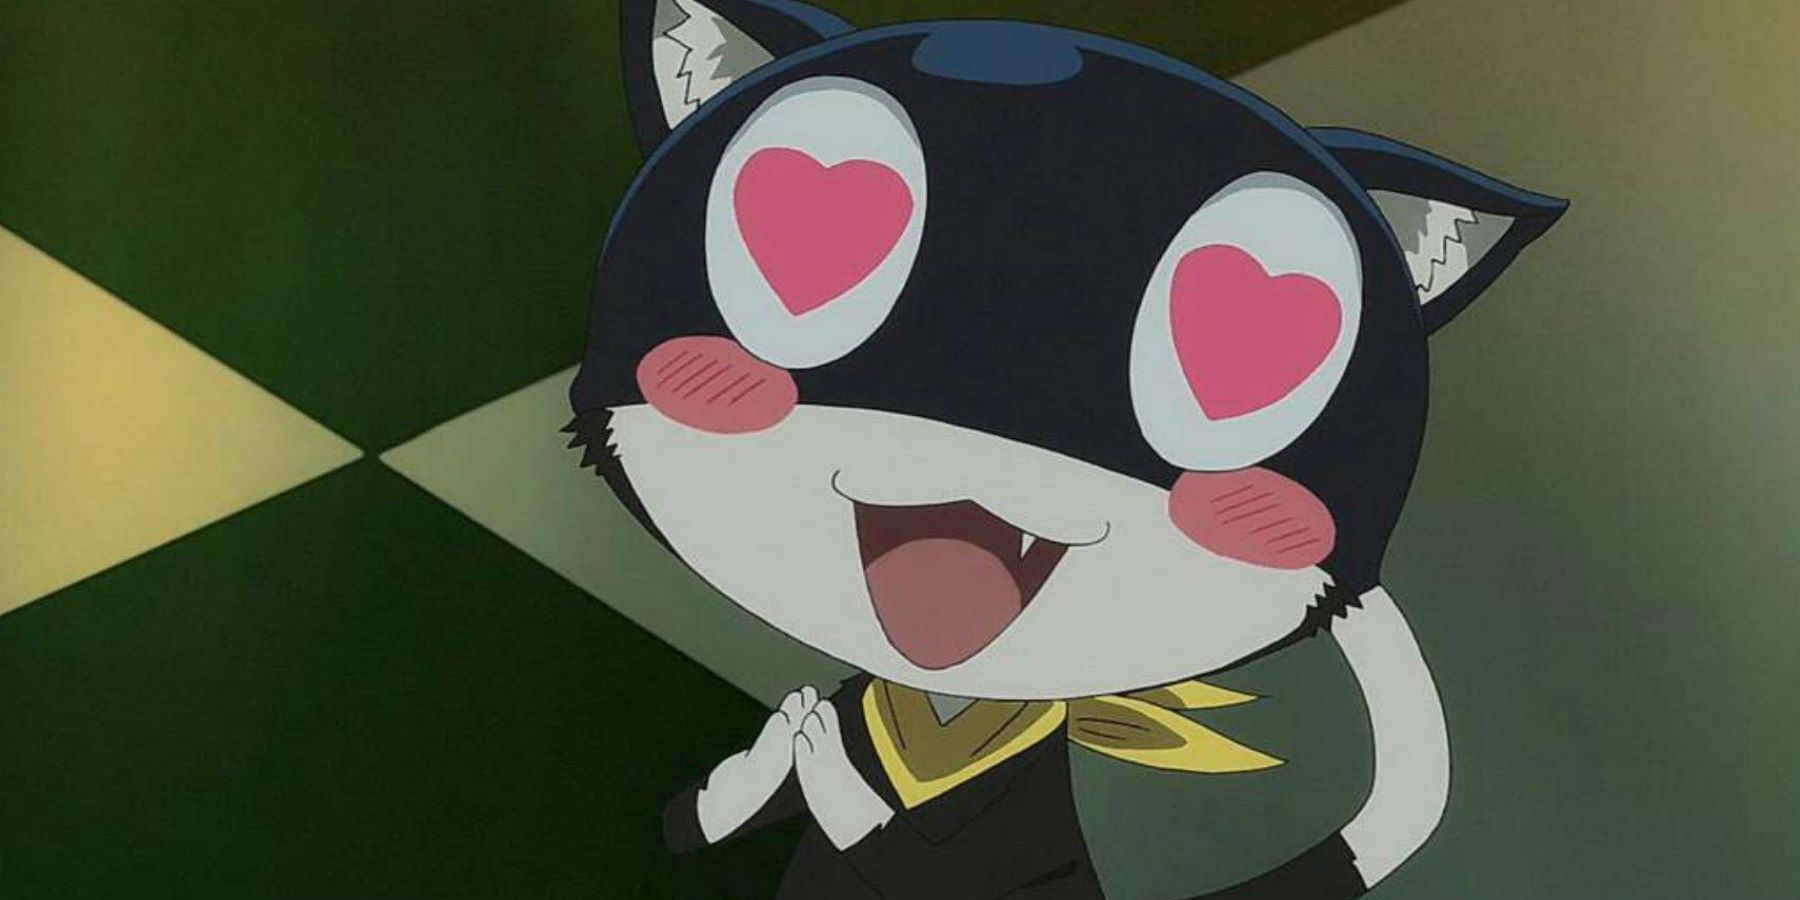 Morgana in a Persona 5 animated cutscene